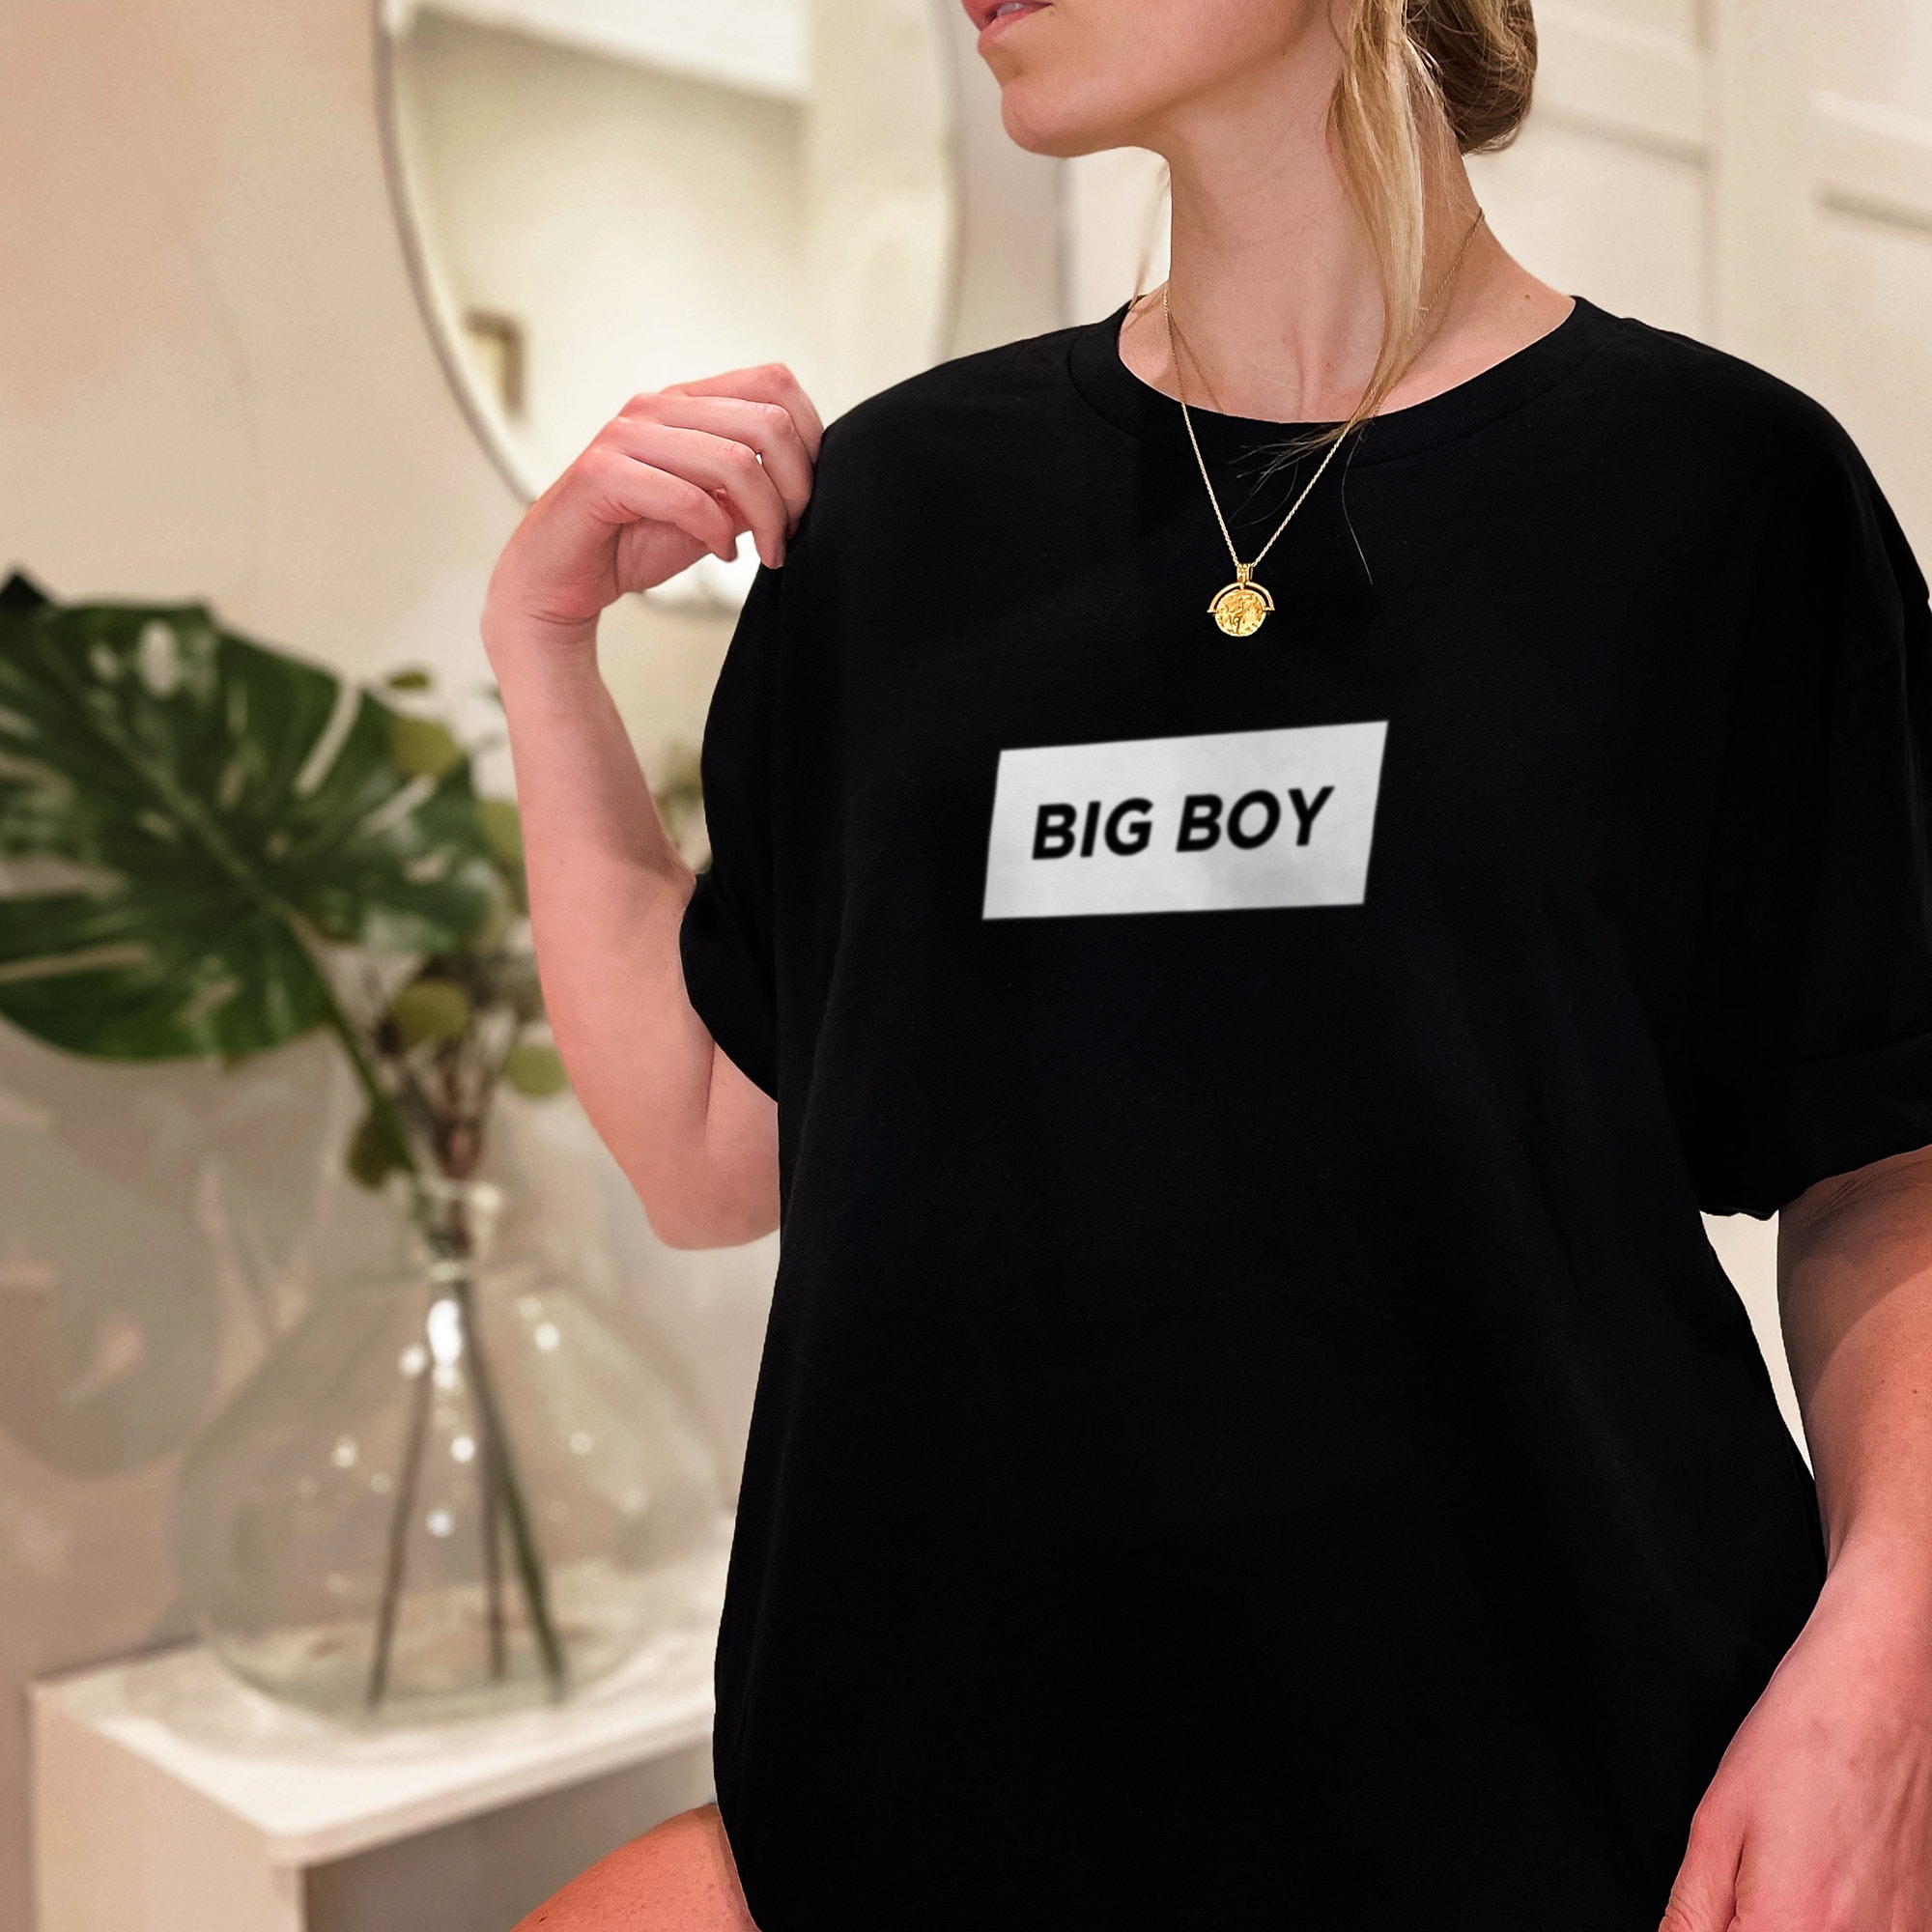 Big Boy T-shirt Big Boy Shirt Tumblr Shirt Unisex T-shirt - Etsy